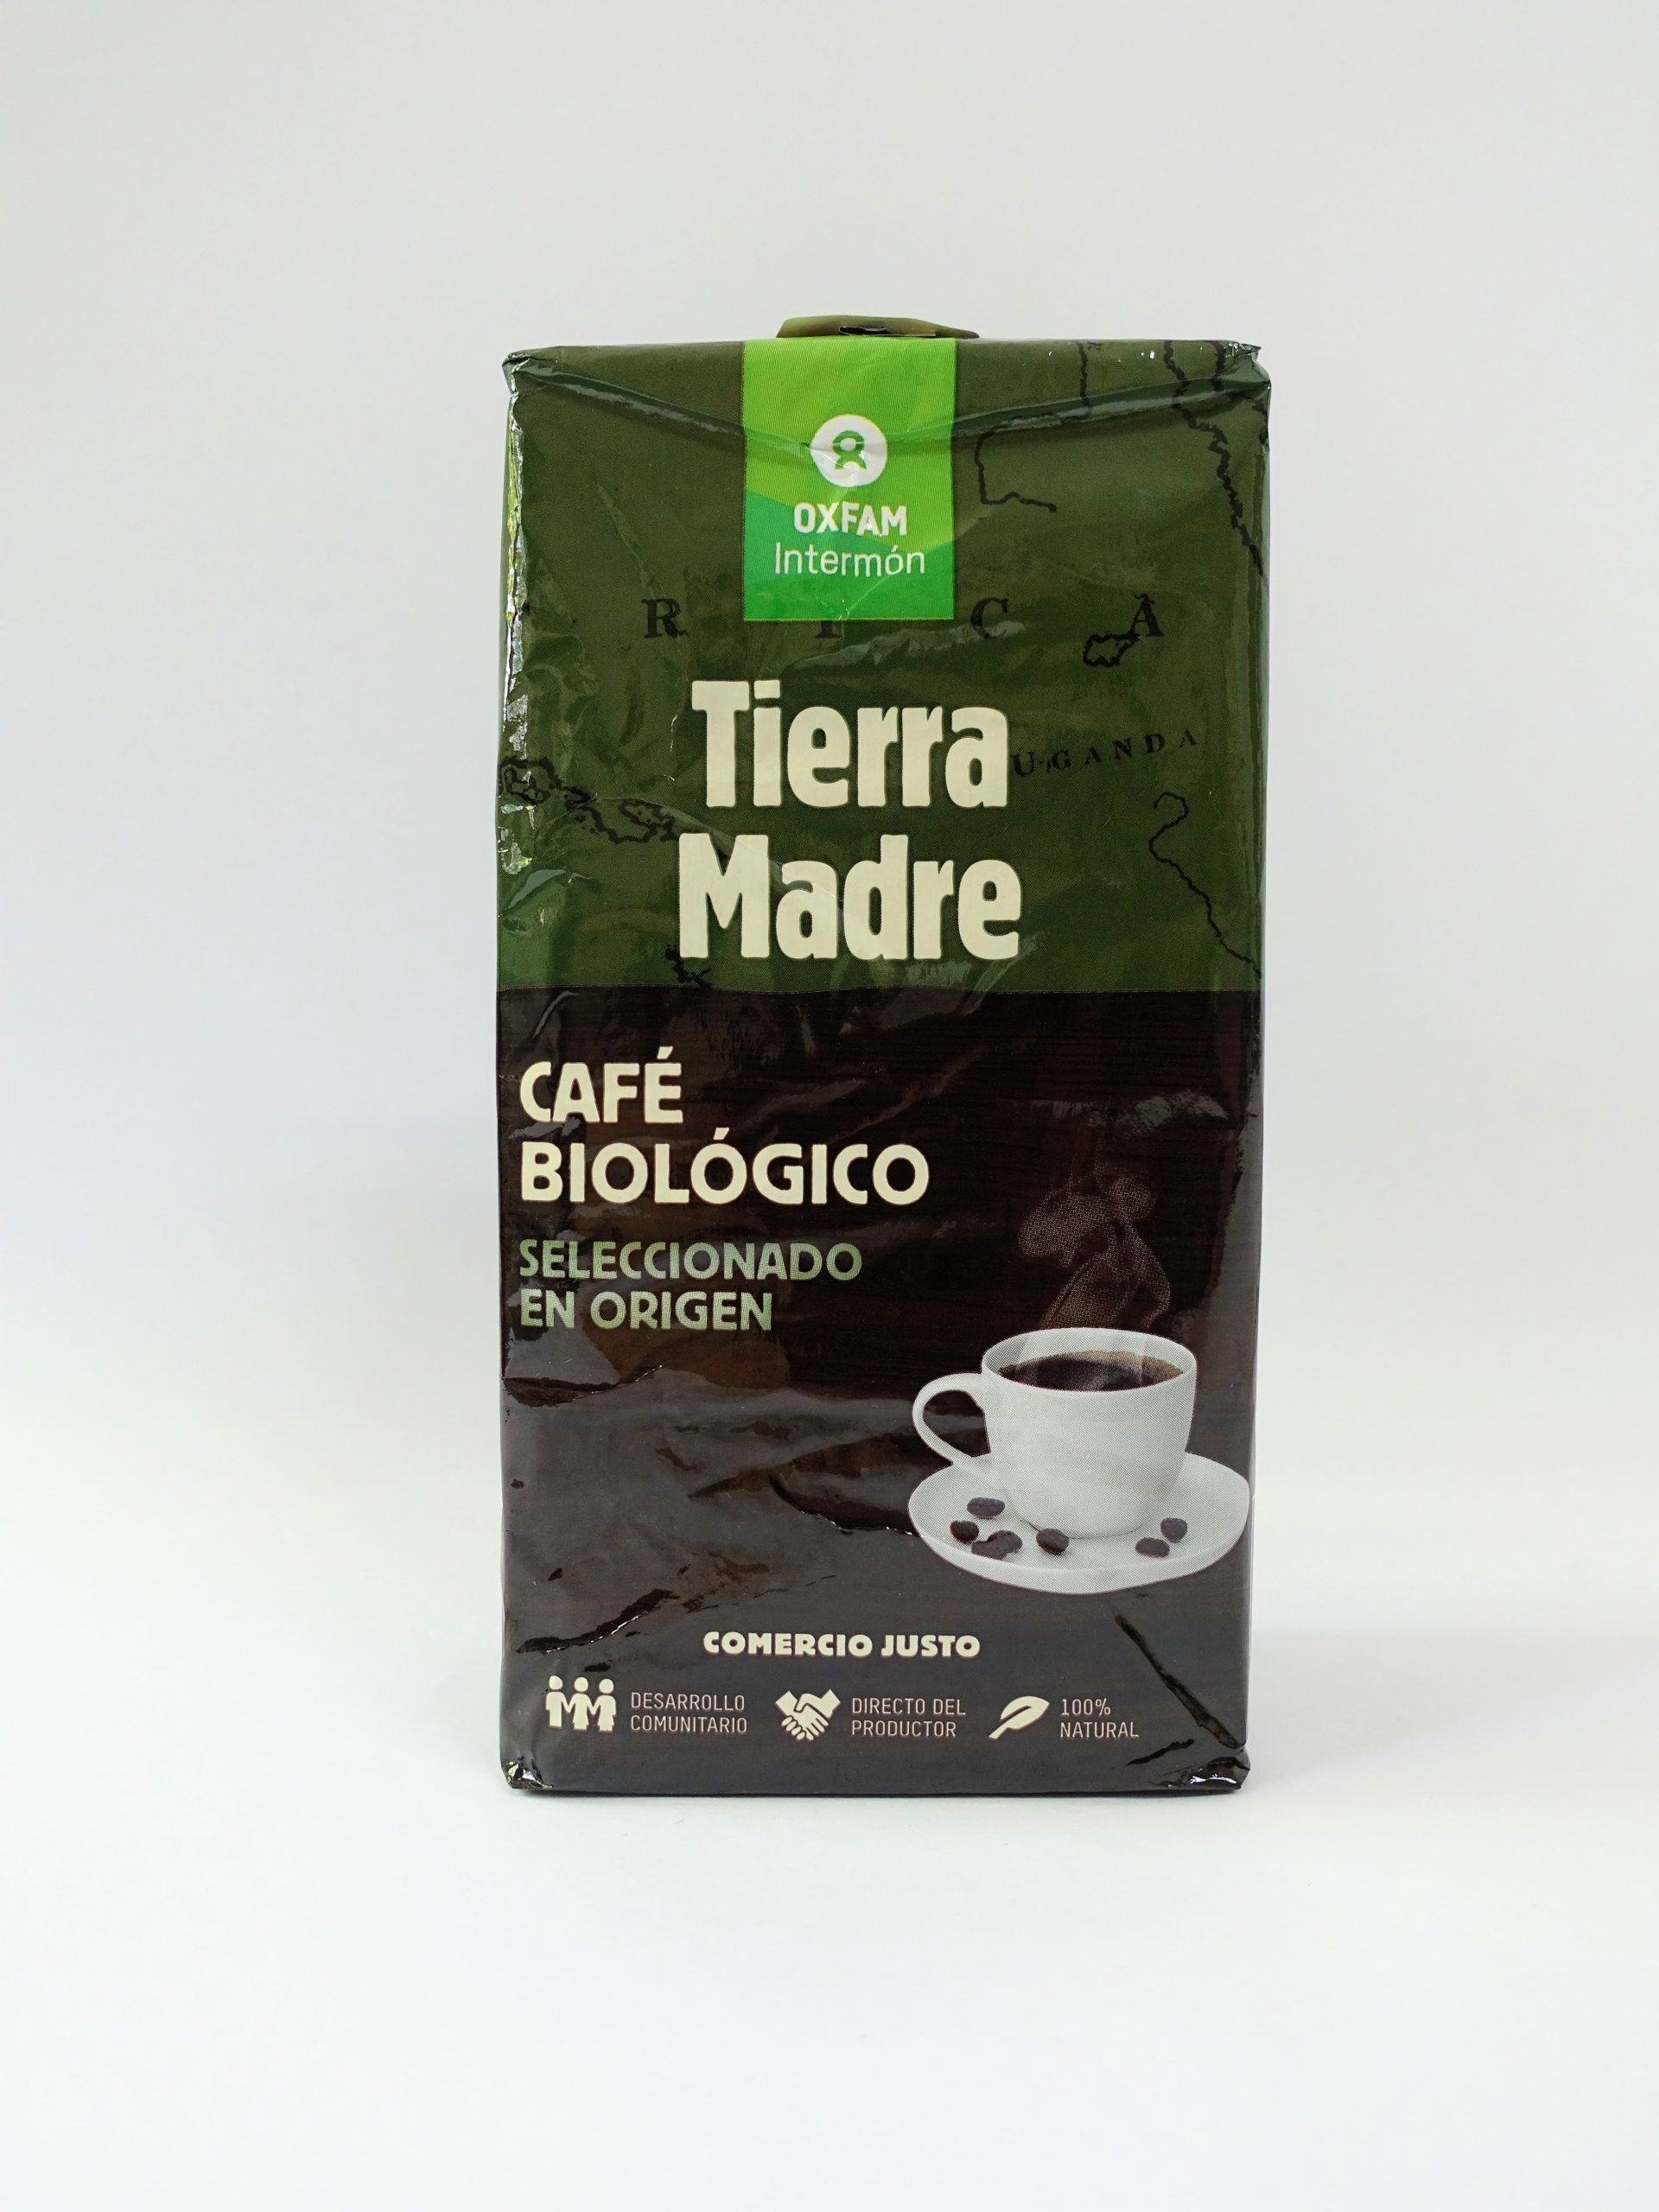 Café molido 100% Arábica - Tierra madre de Oxfam Intermón